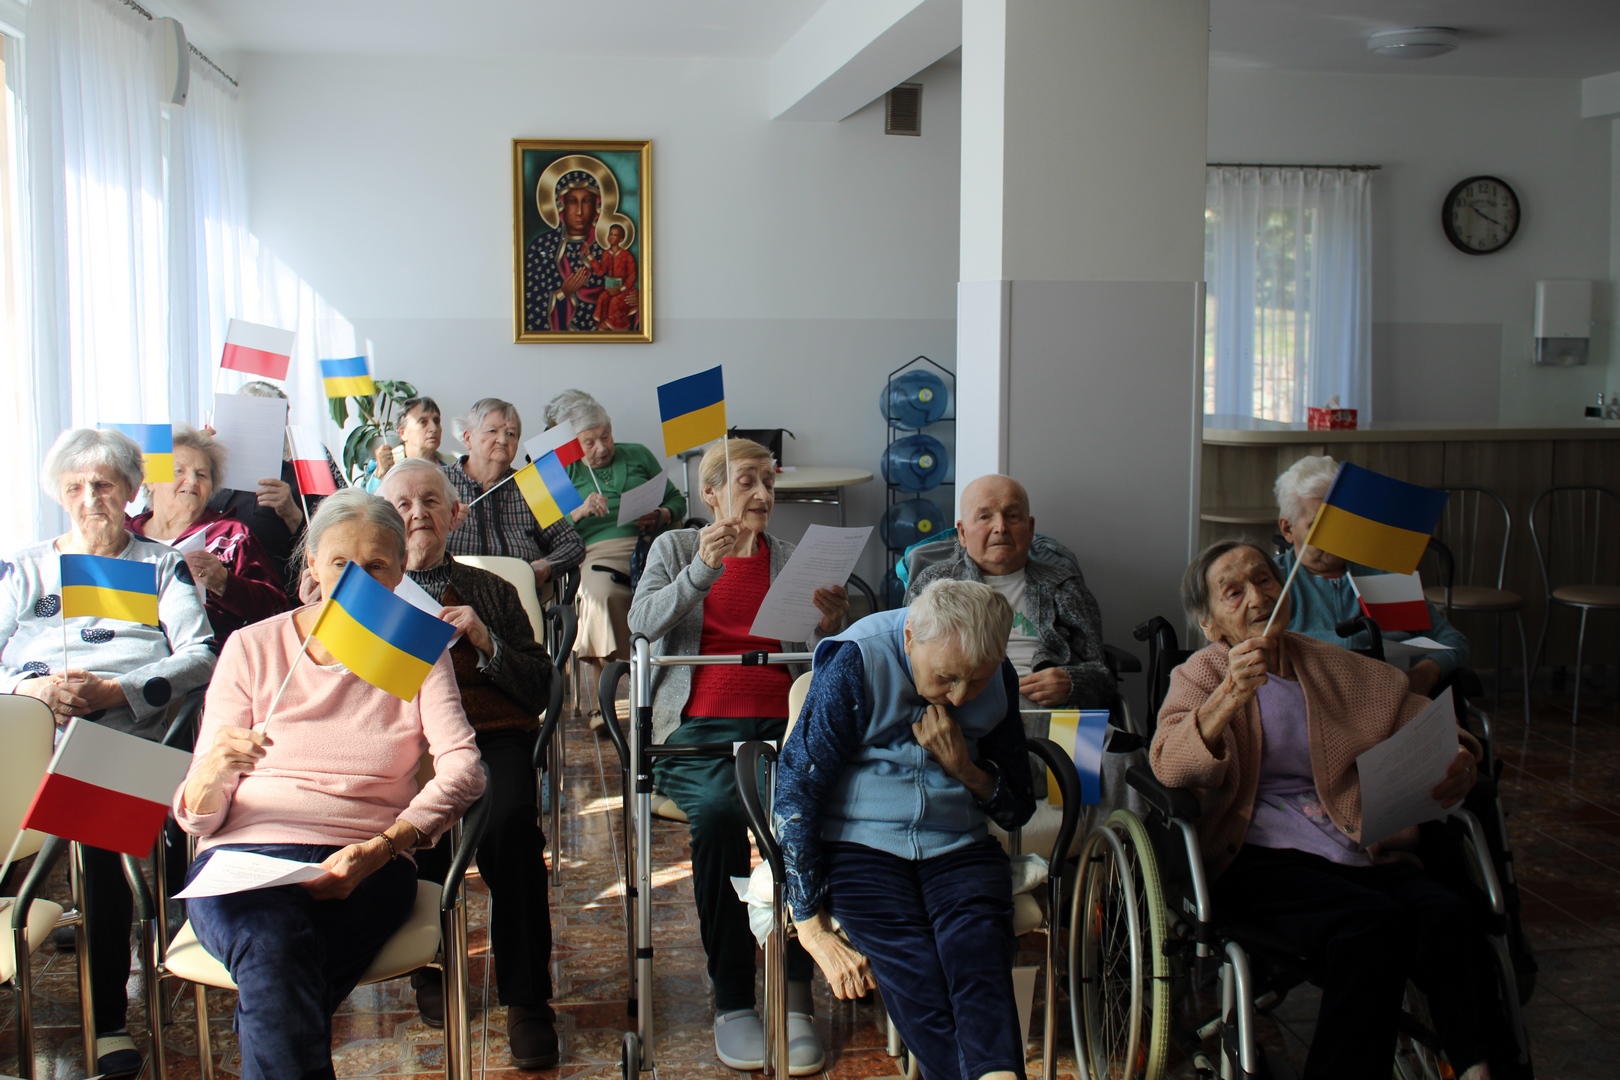 Na zdjęciu grupa 14 mieszkańców siedzących w Sali. Niektóre osoby mają na patyku flagę Ukrainy oraz Polski.